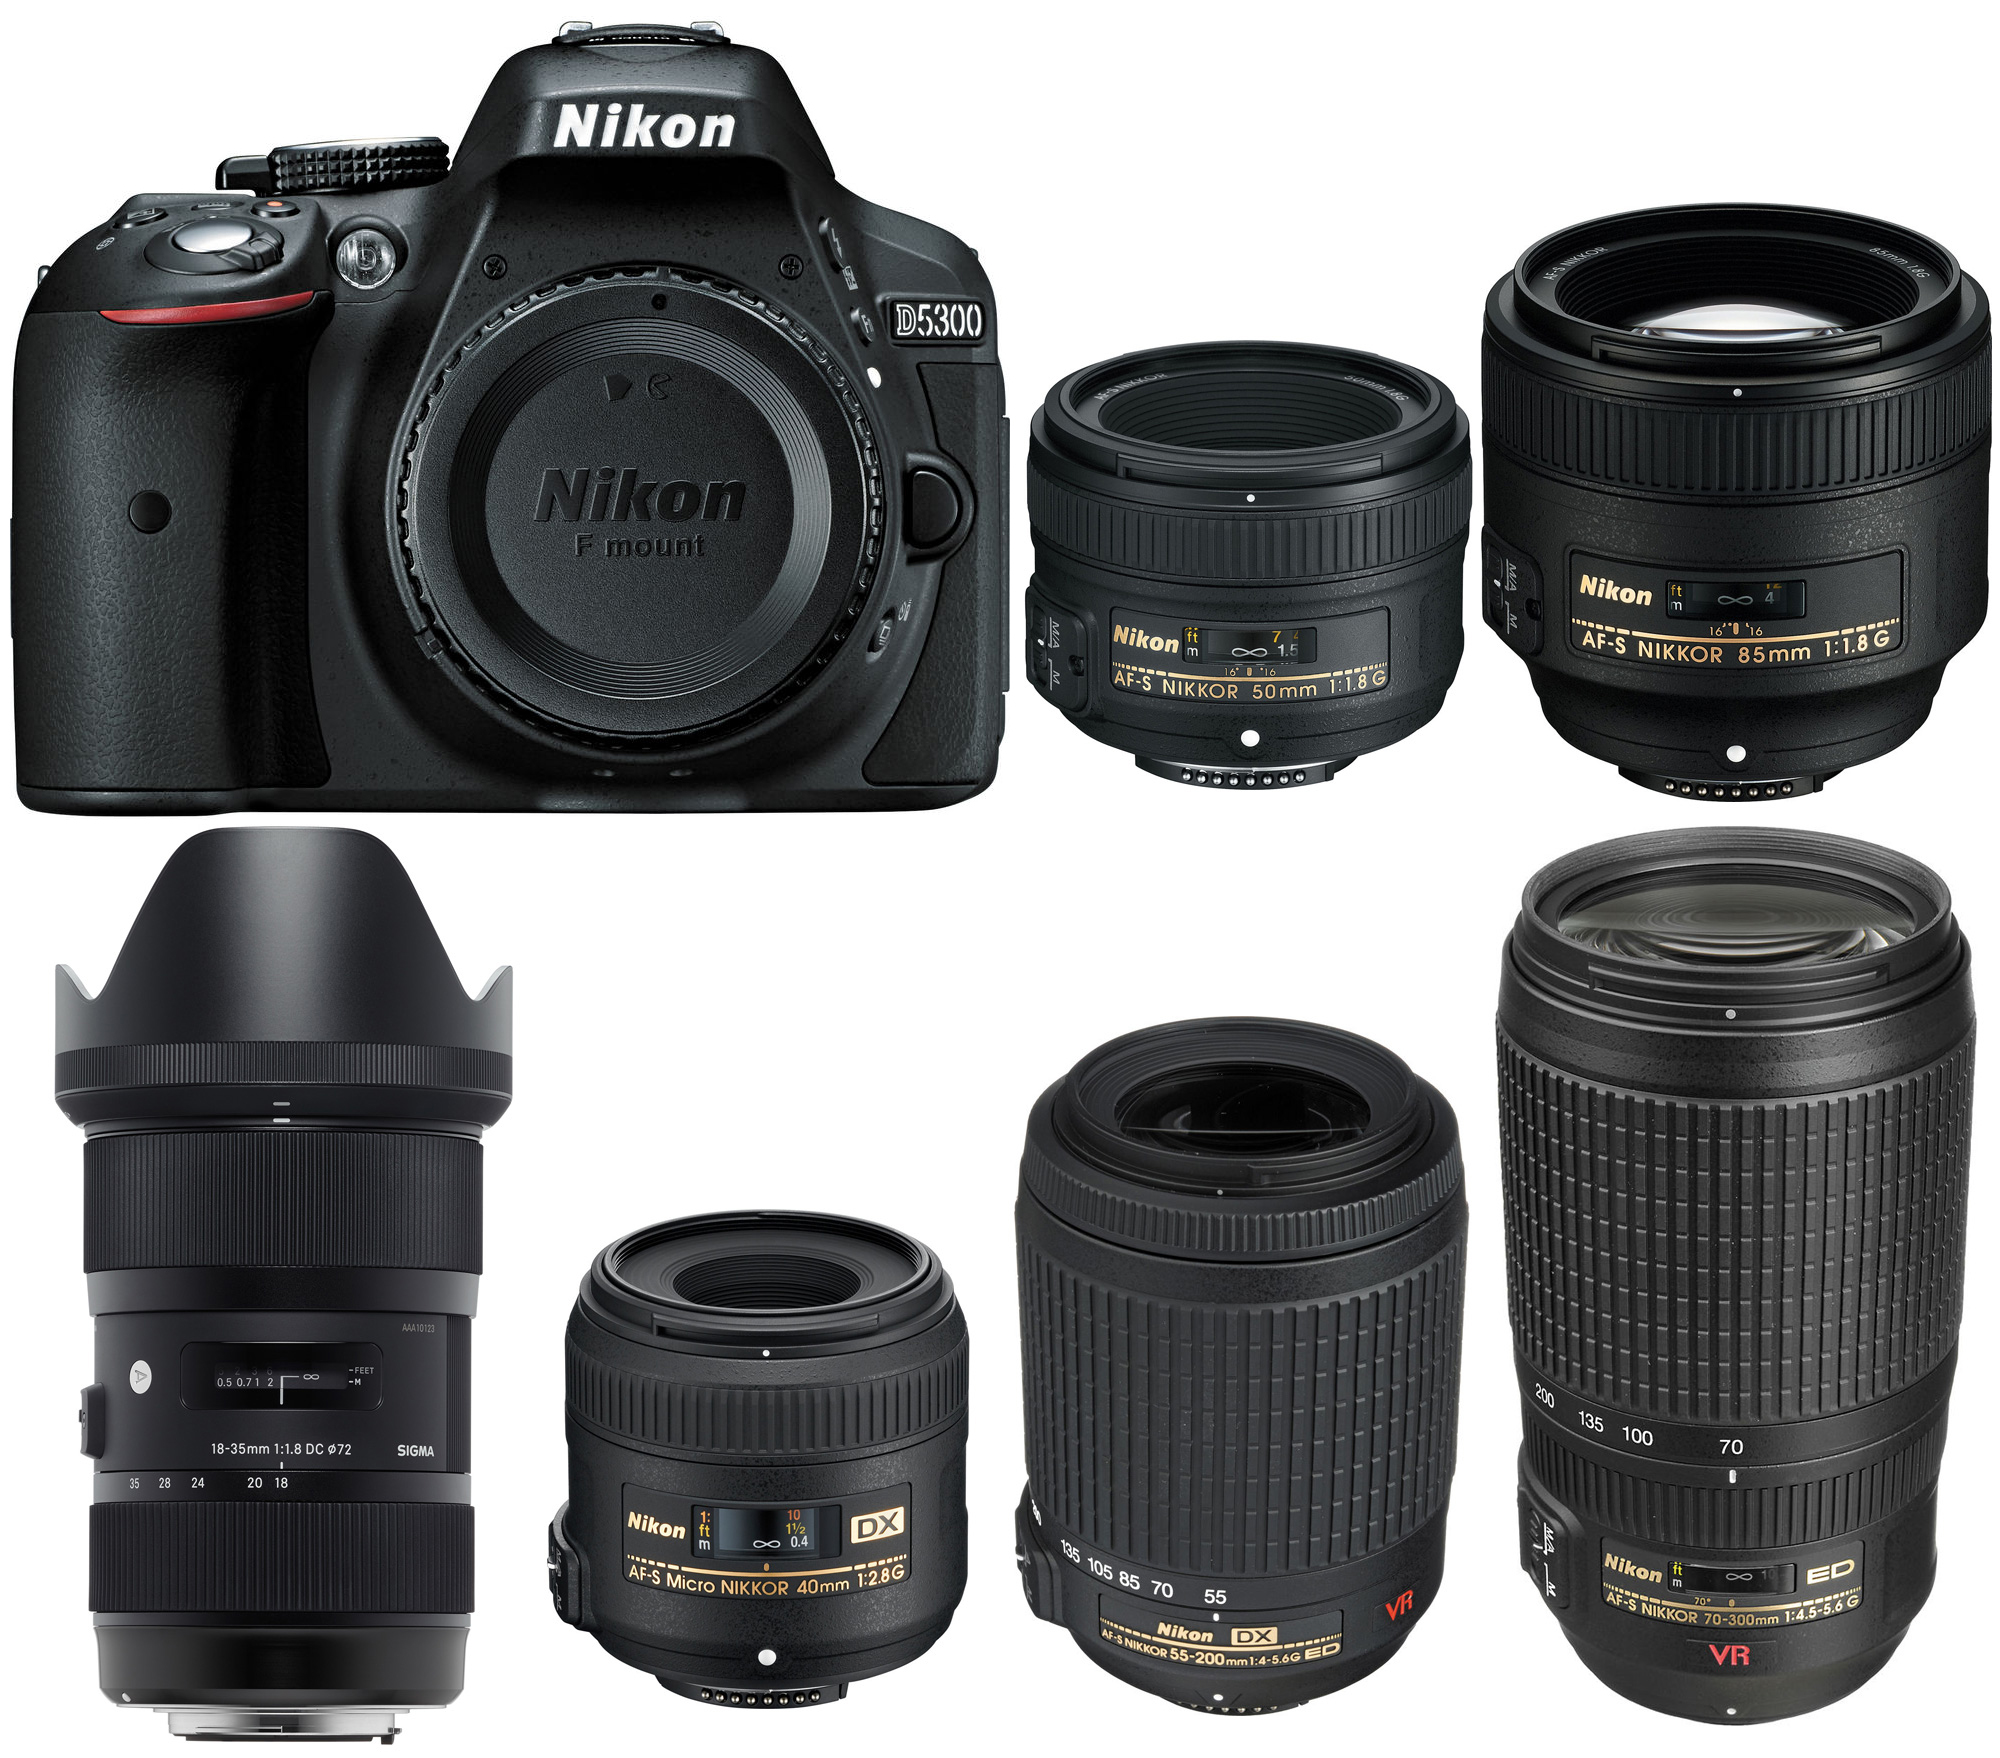 chef Vertellen tafel Best Lenses for Nikon D5300 - Camera News at Cameraegg